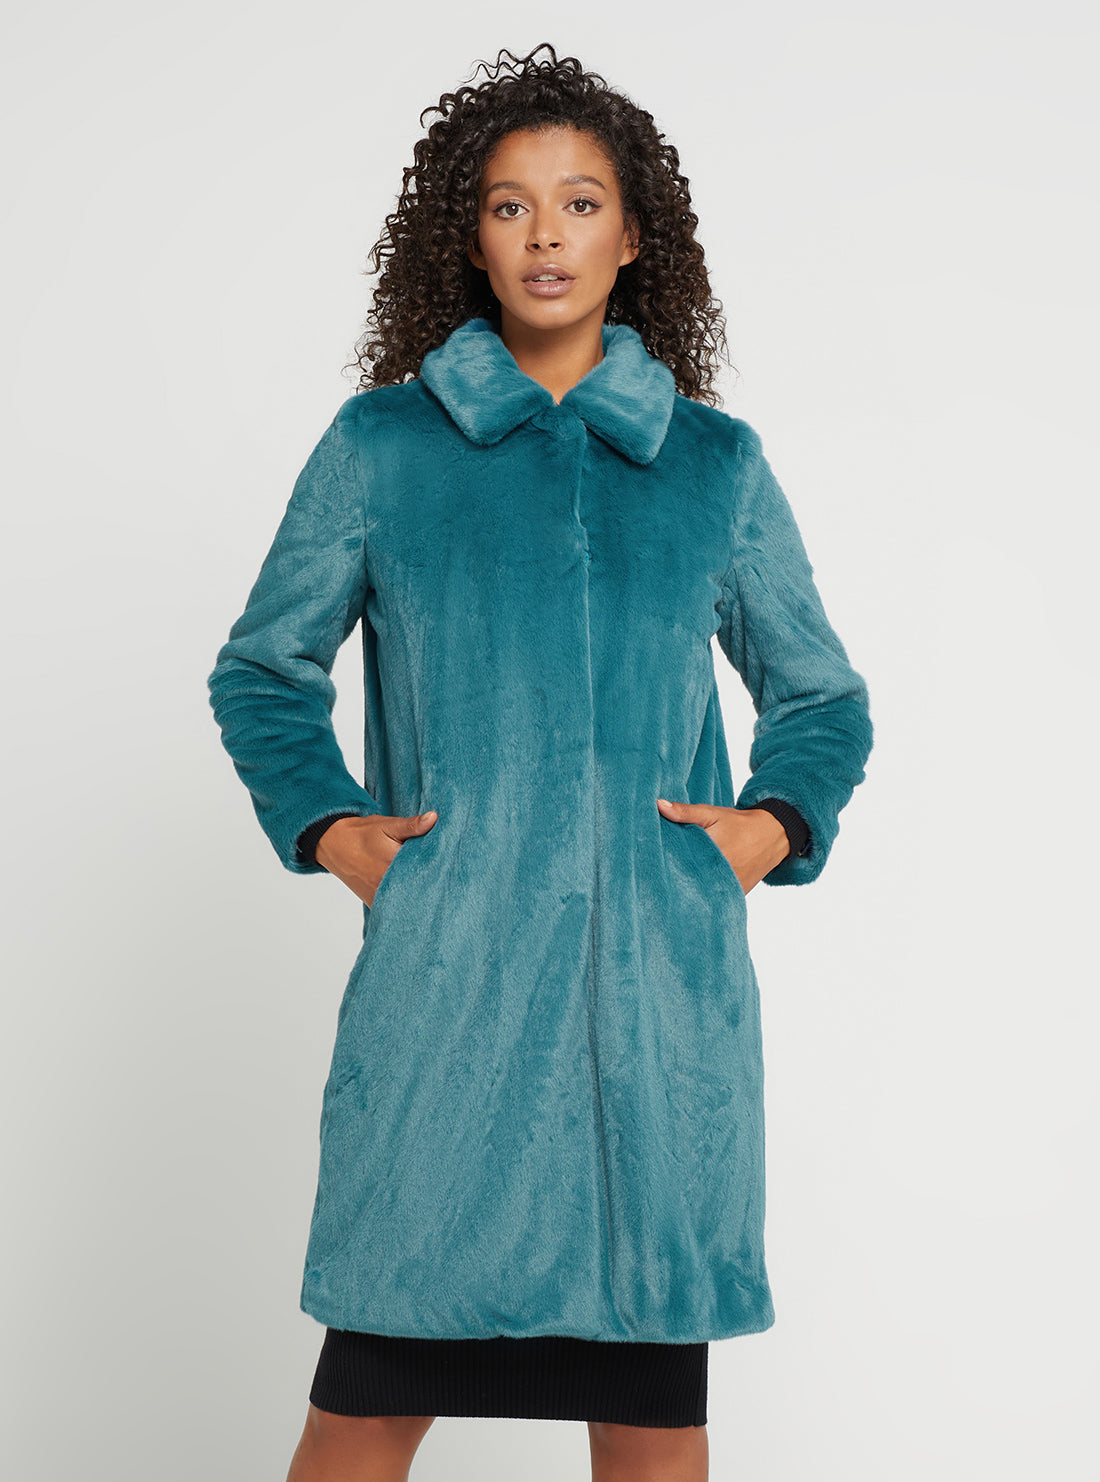 GUESS Women's Teal Faux Fur Simonne Coat W2BL13WETS0 Front View